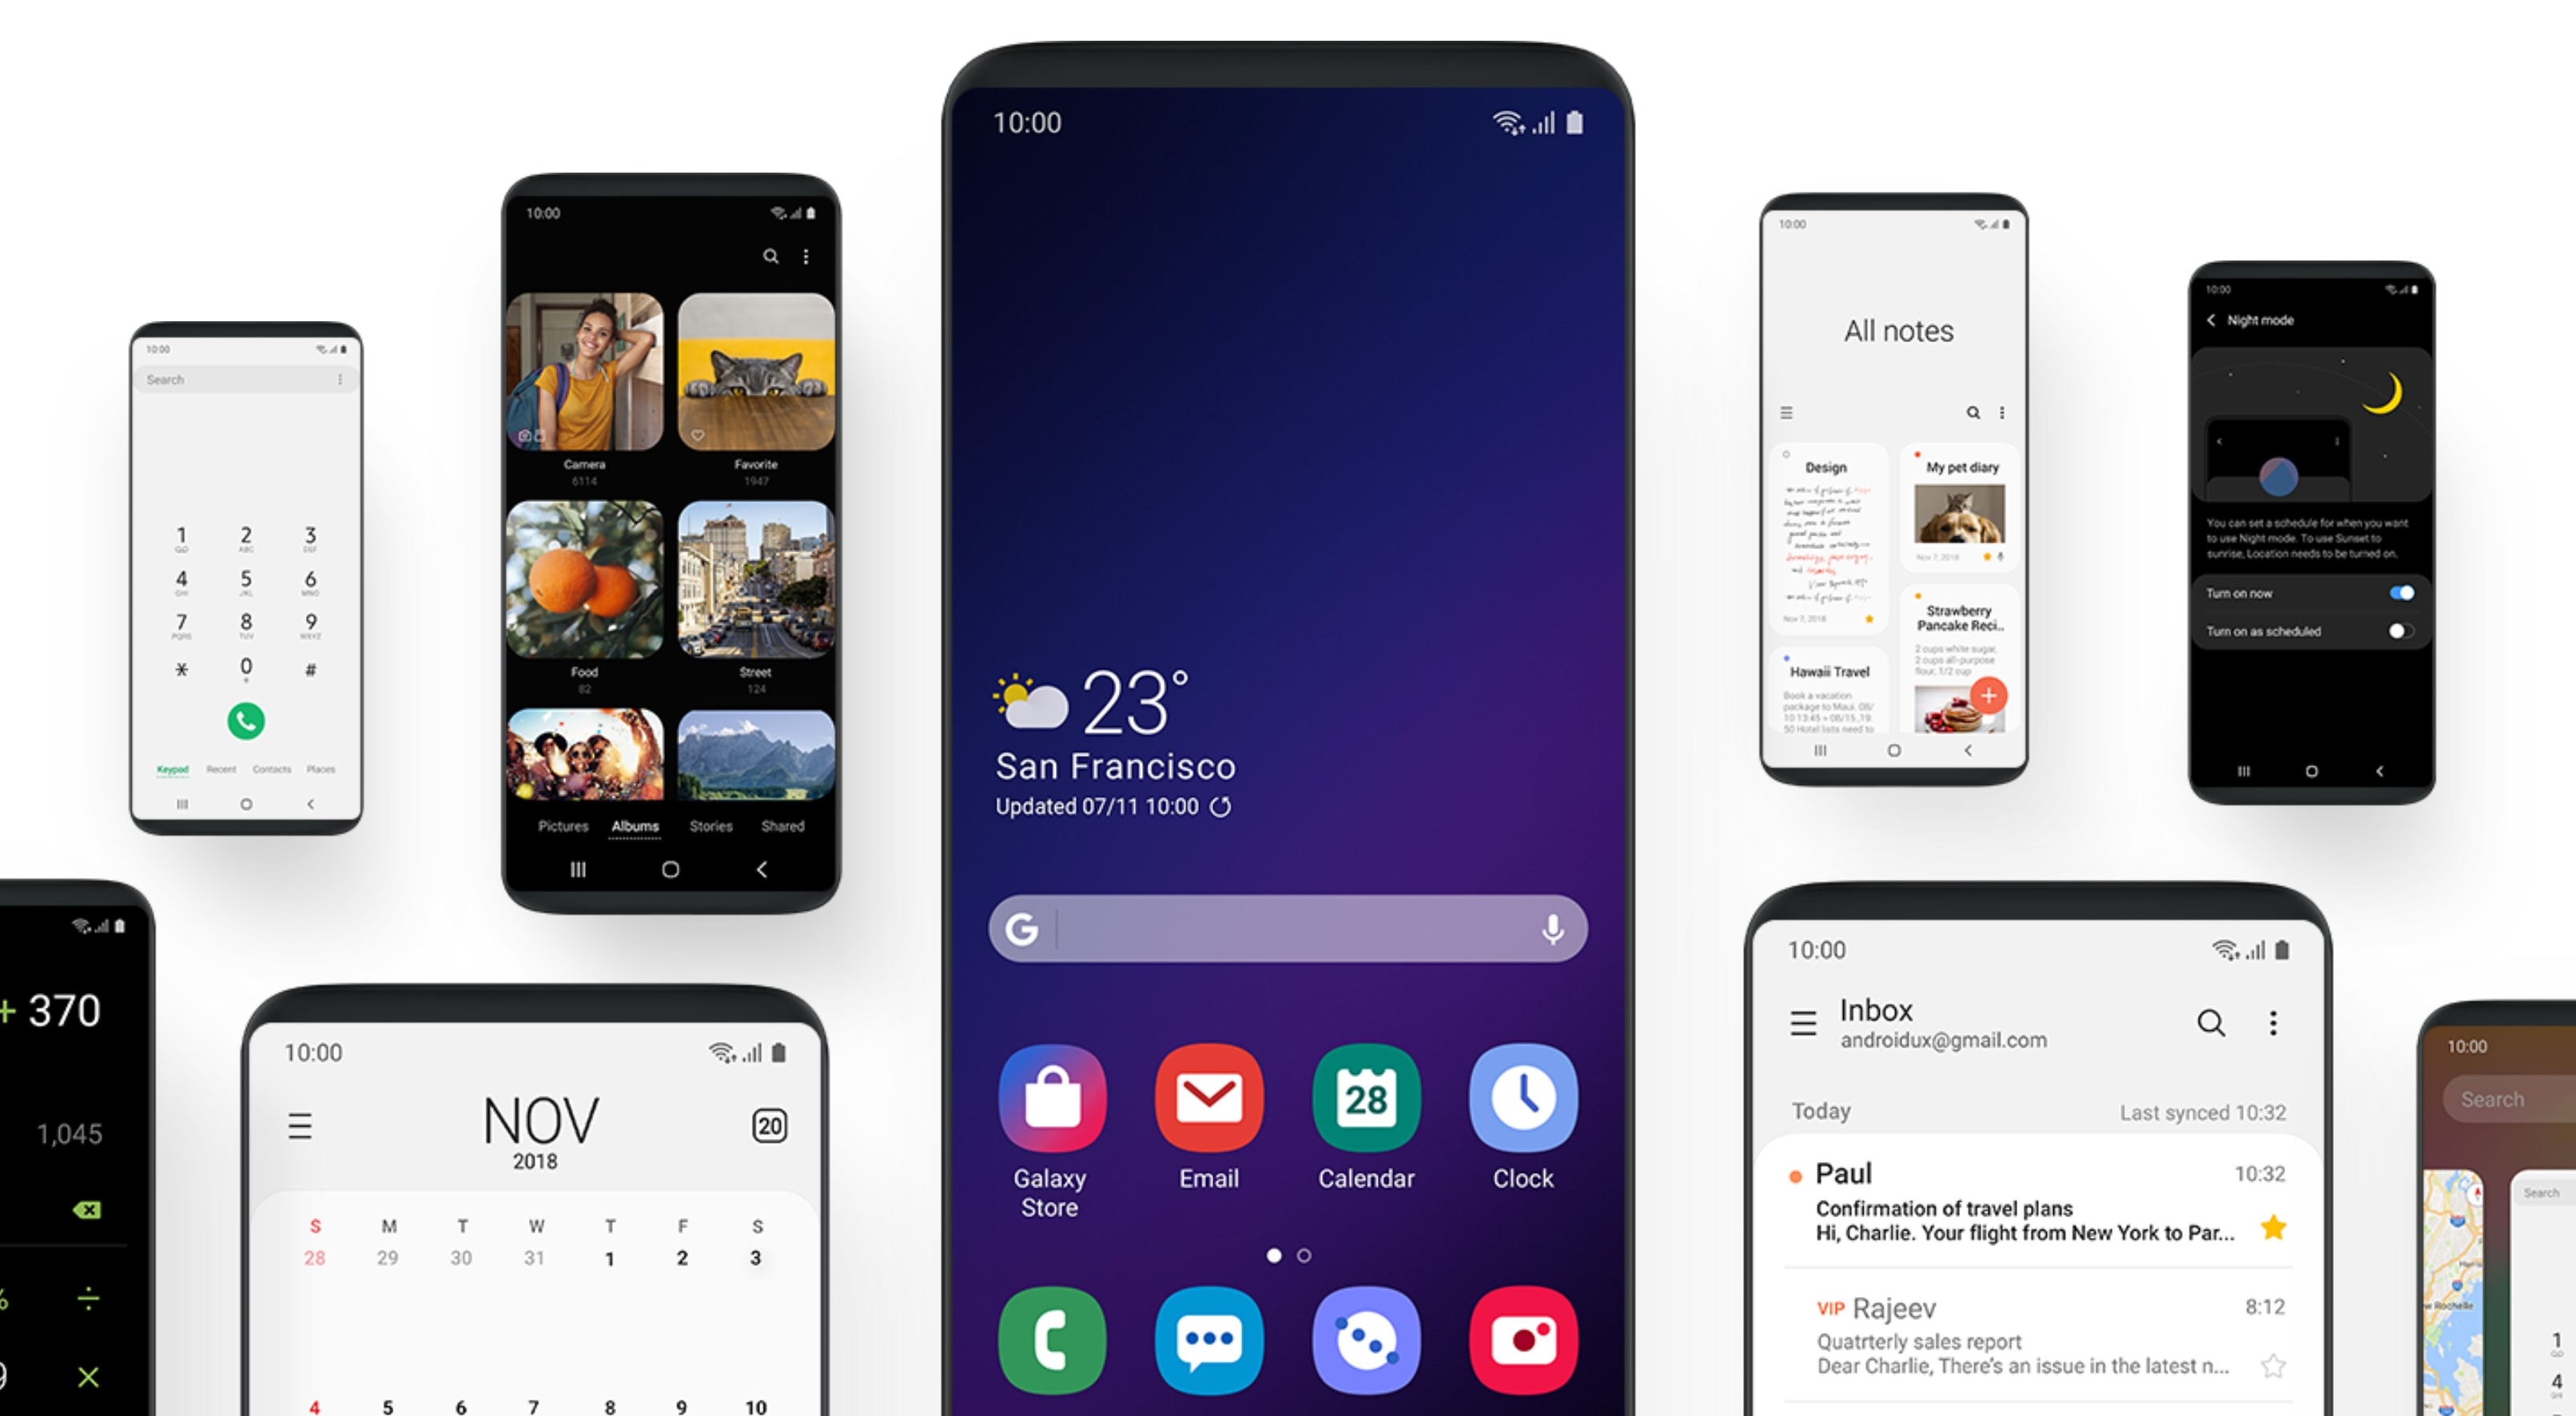 Samsung Galaxy S10 : 5G, écran InfinityO, One UI, tout ce que lon sait sur ses 